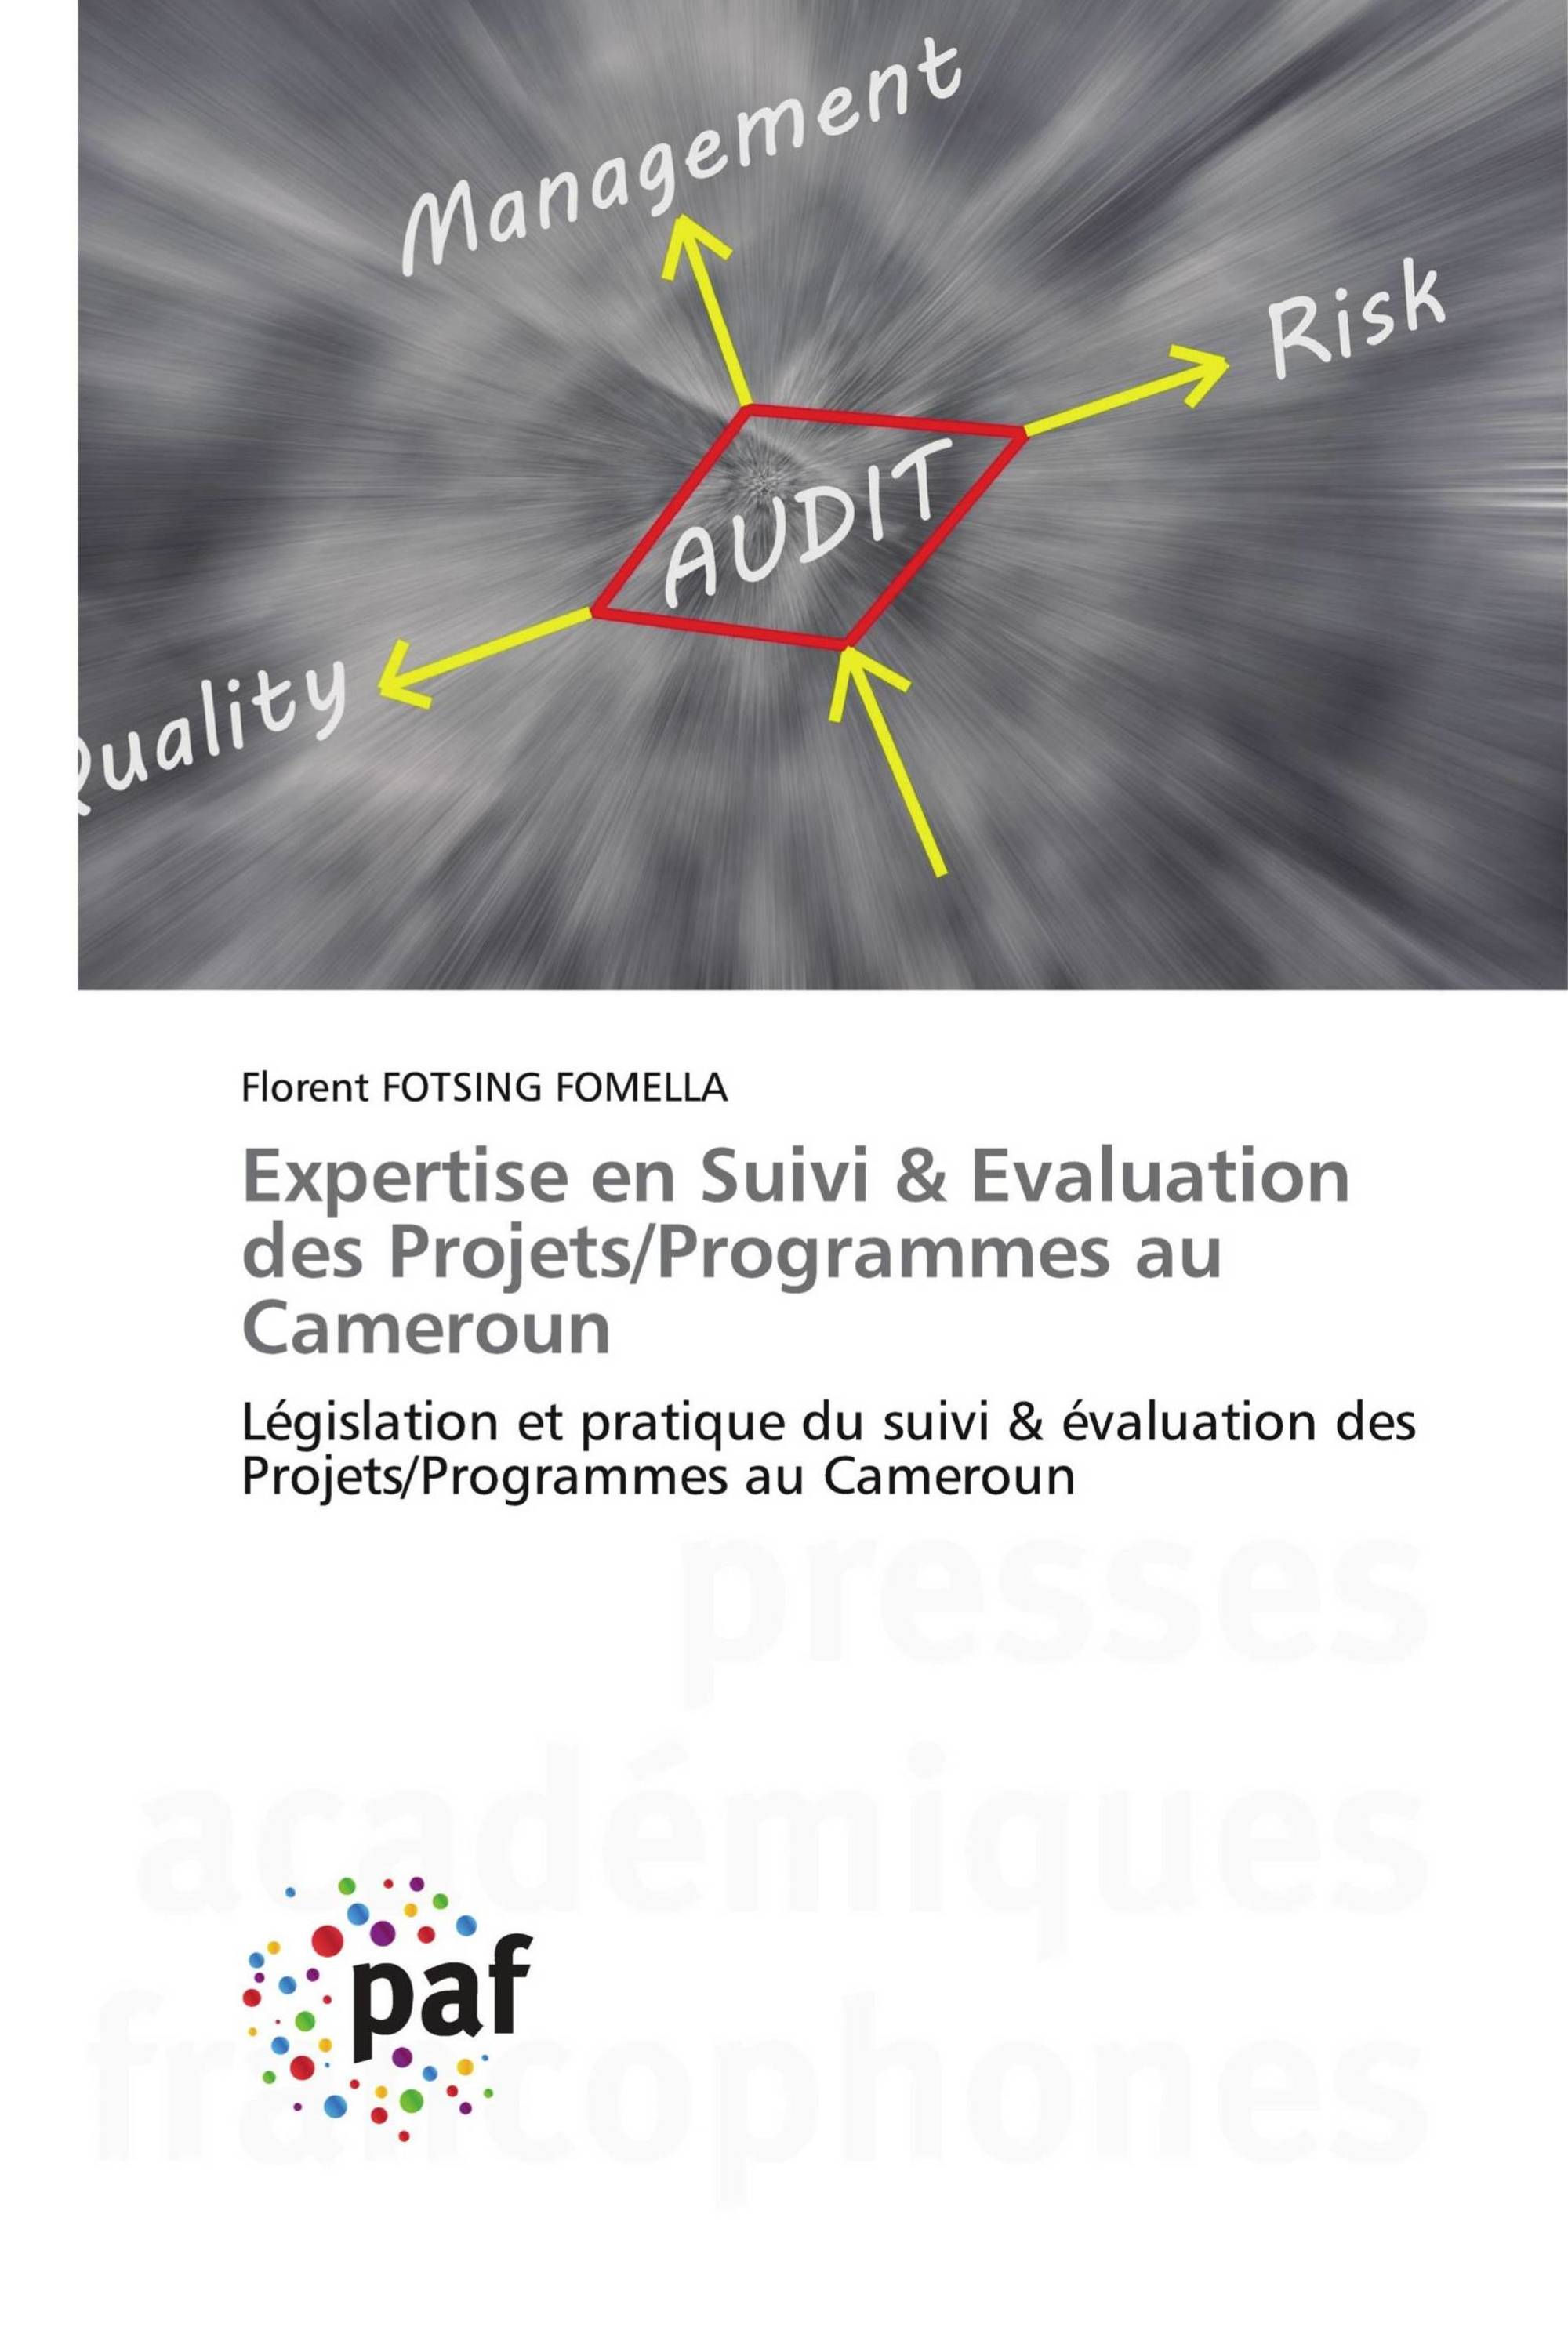 Expertise en Suivi & Evaluation des Projets/Programmes au Cameroun